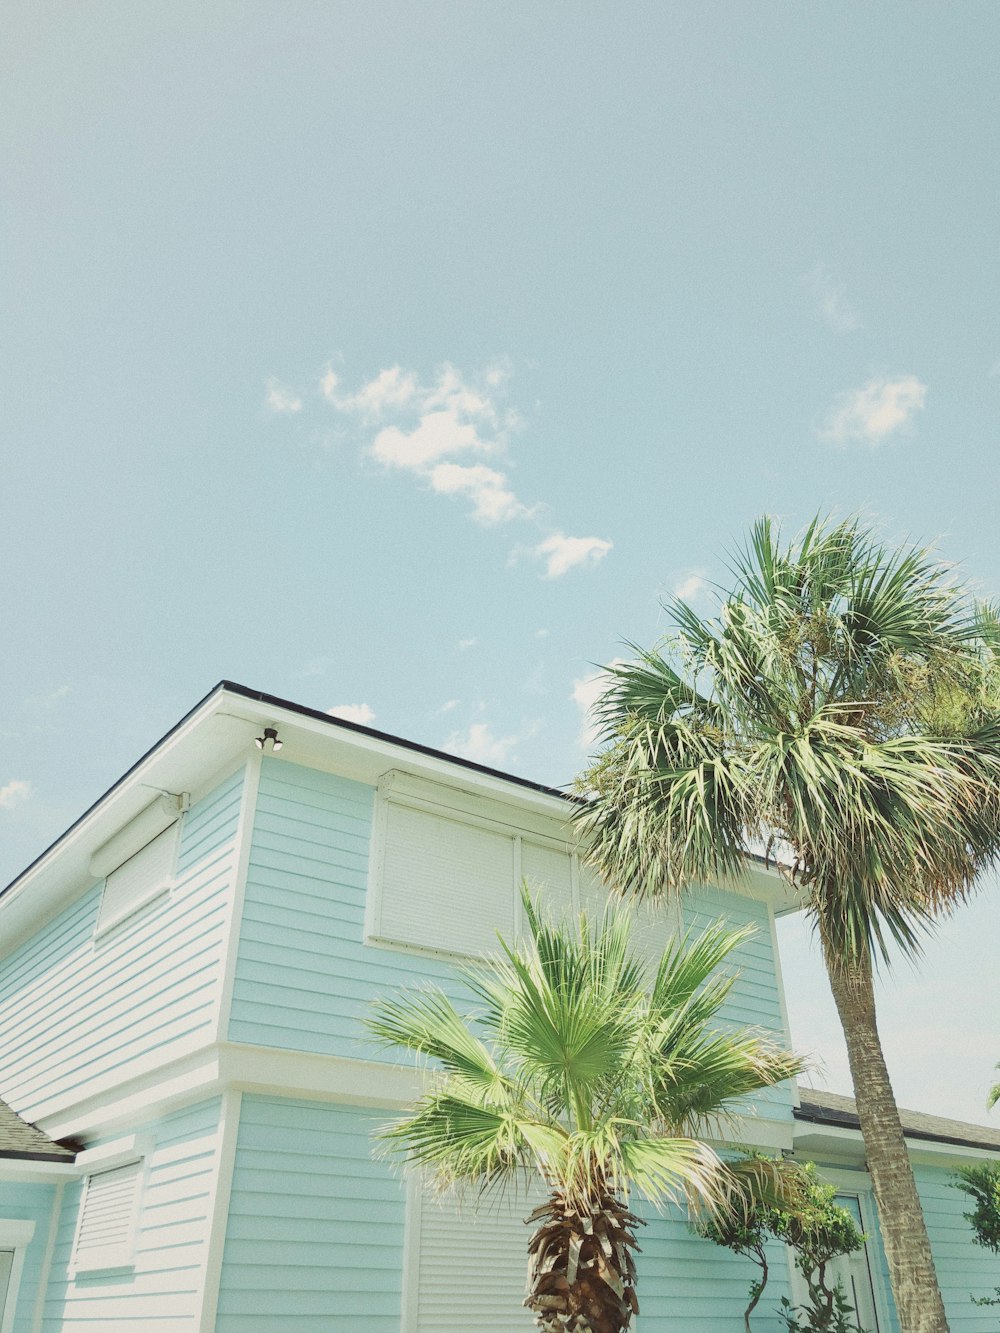 Casa de madera blanca al lado de la palmera bajo el cielo azul durante el día